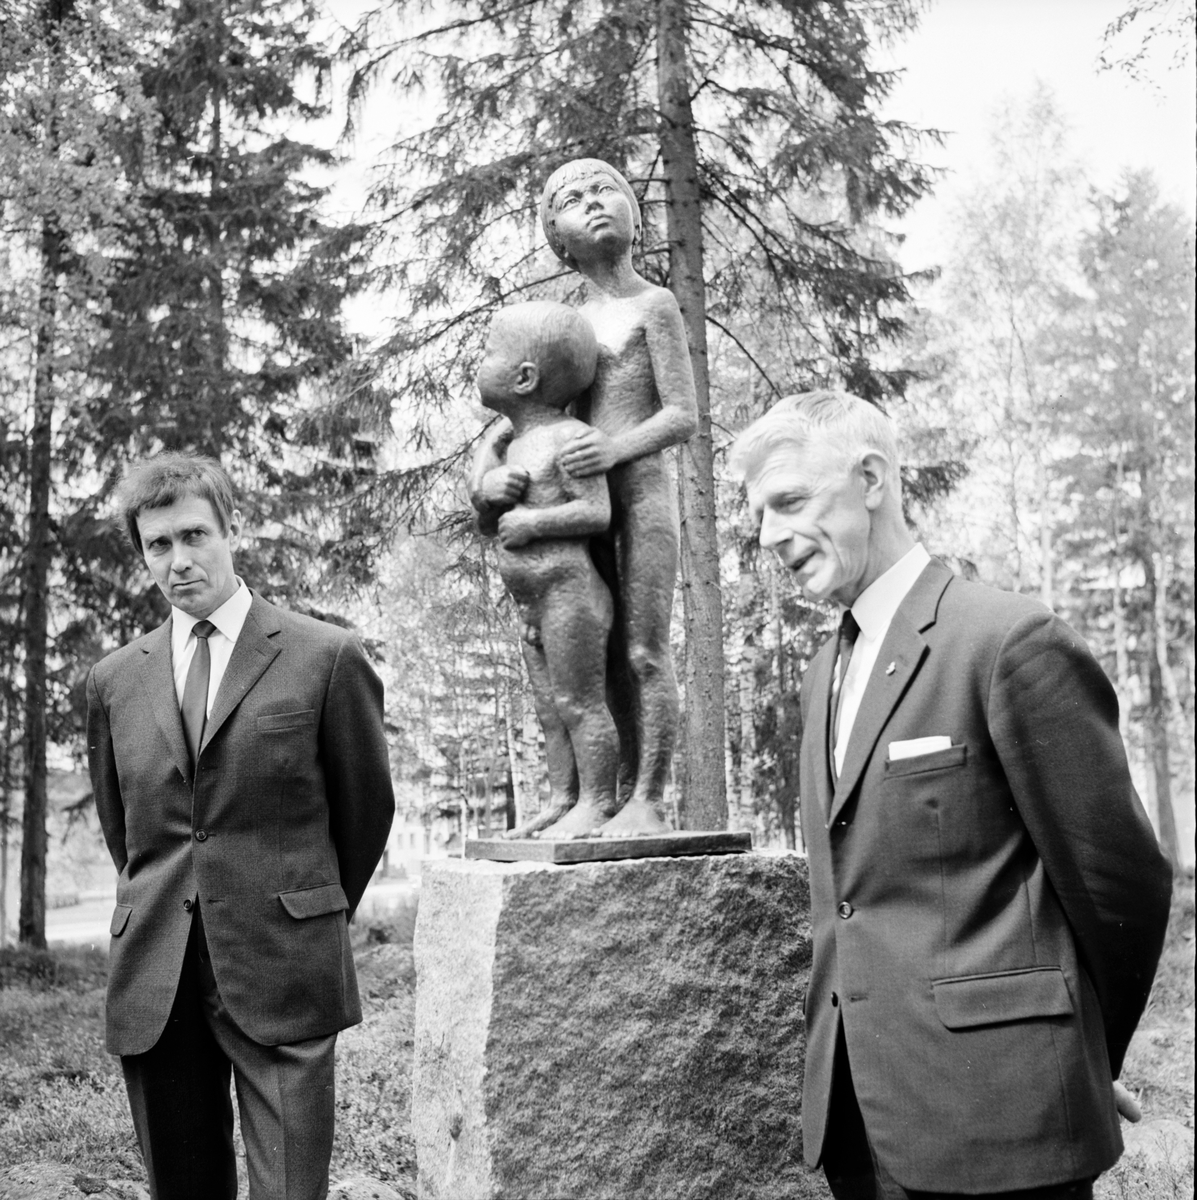 Per Nilsson-Öst. Skulptur vid blomsterkransen.
31/5-1967